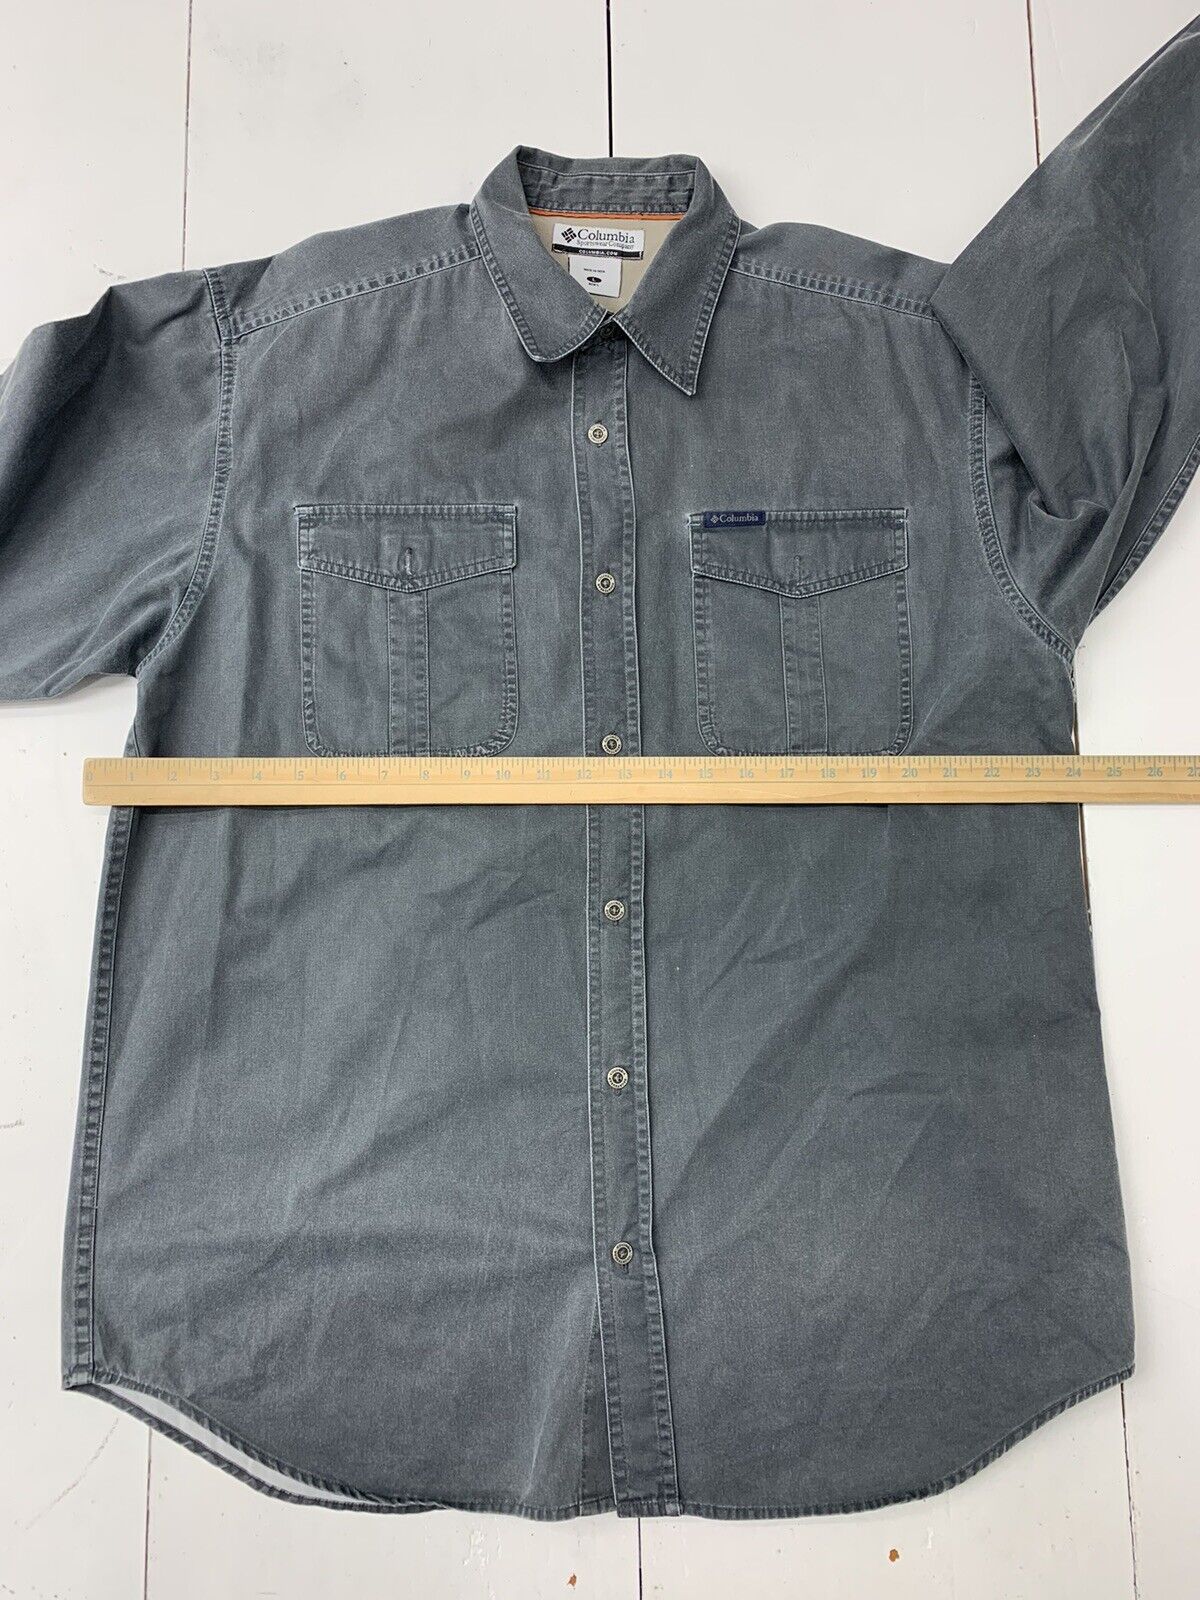 Men's Columbia long sleeve shirts size large - clothing